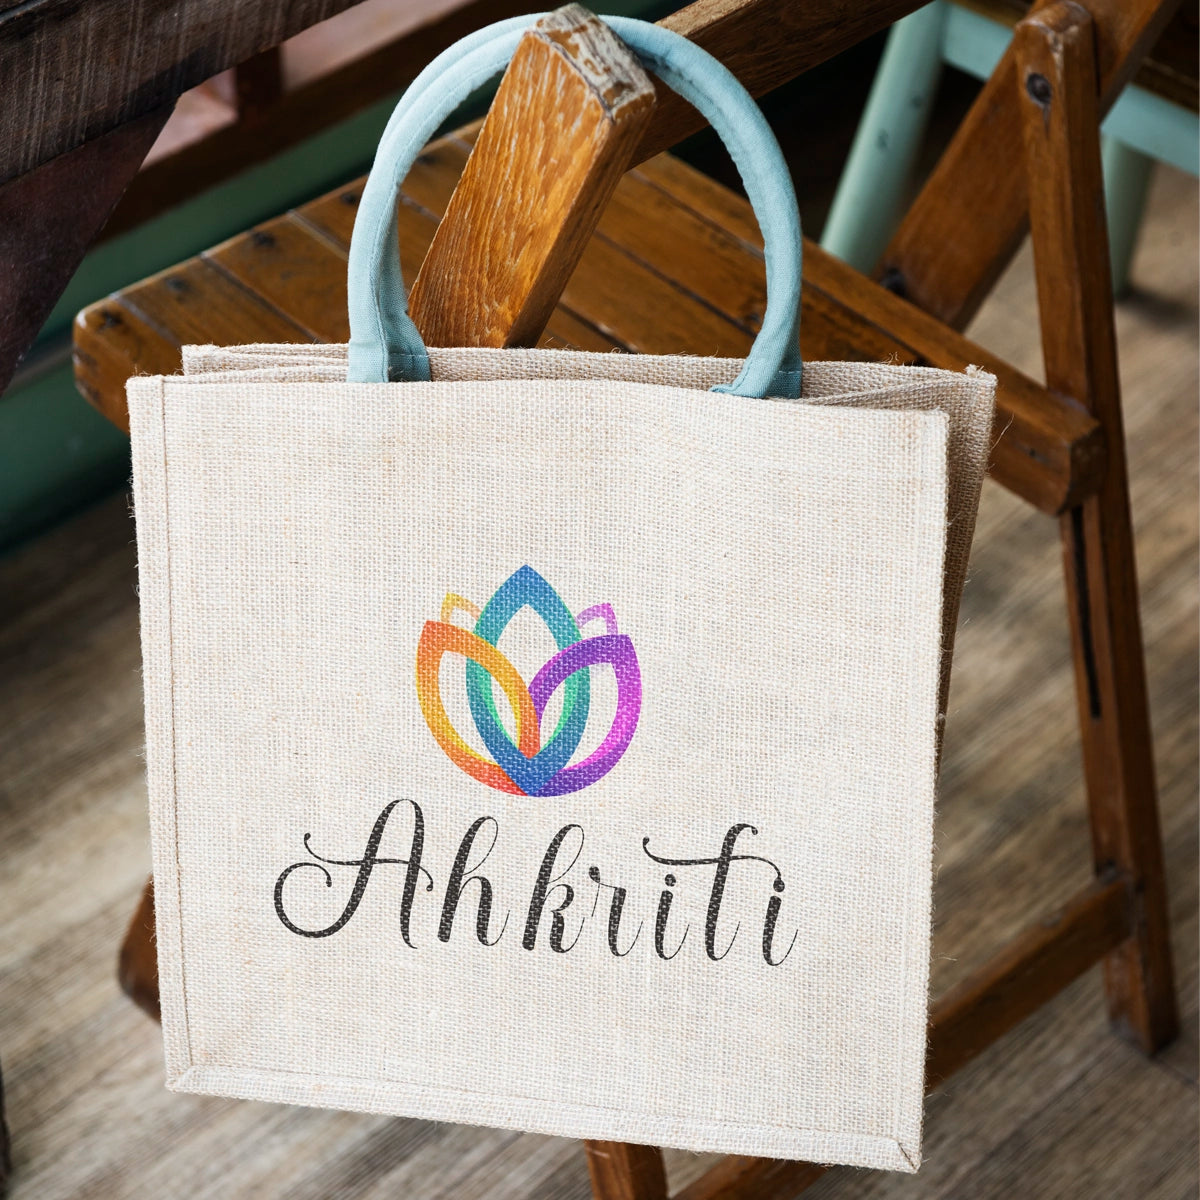 ahkriti.com